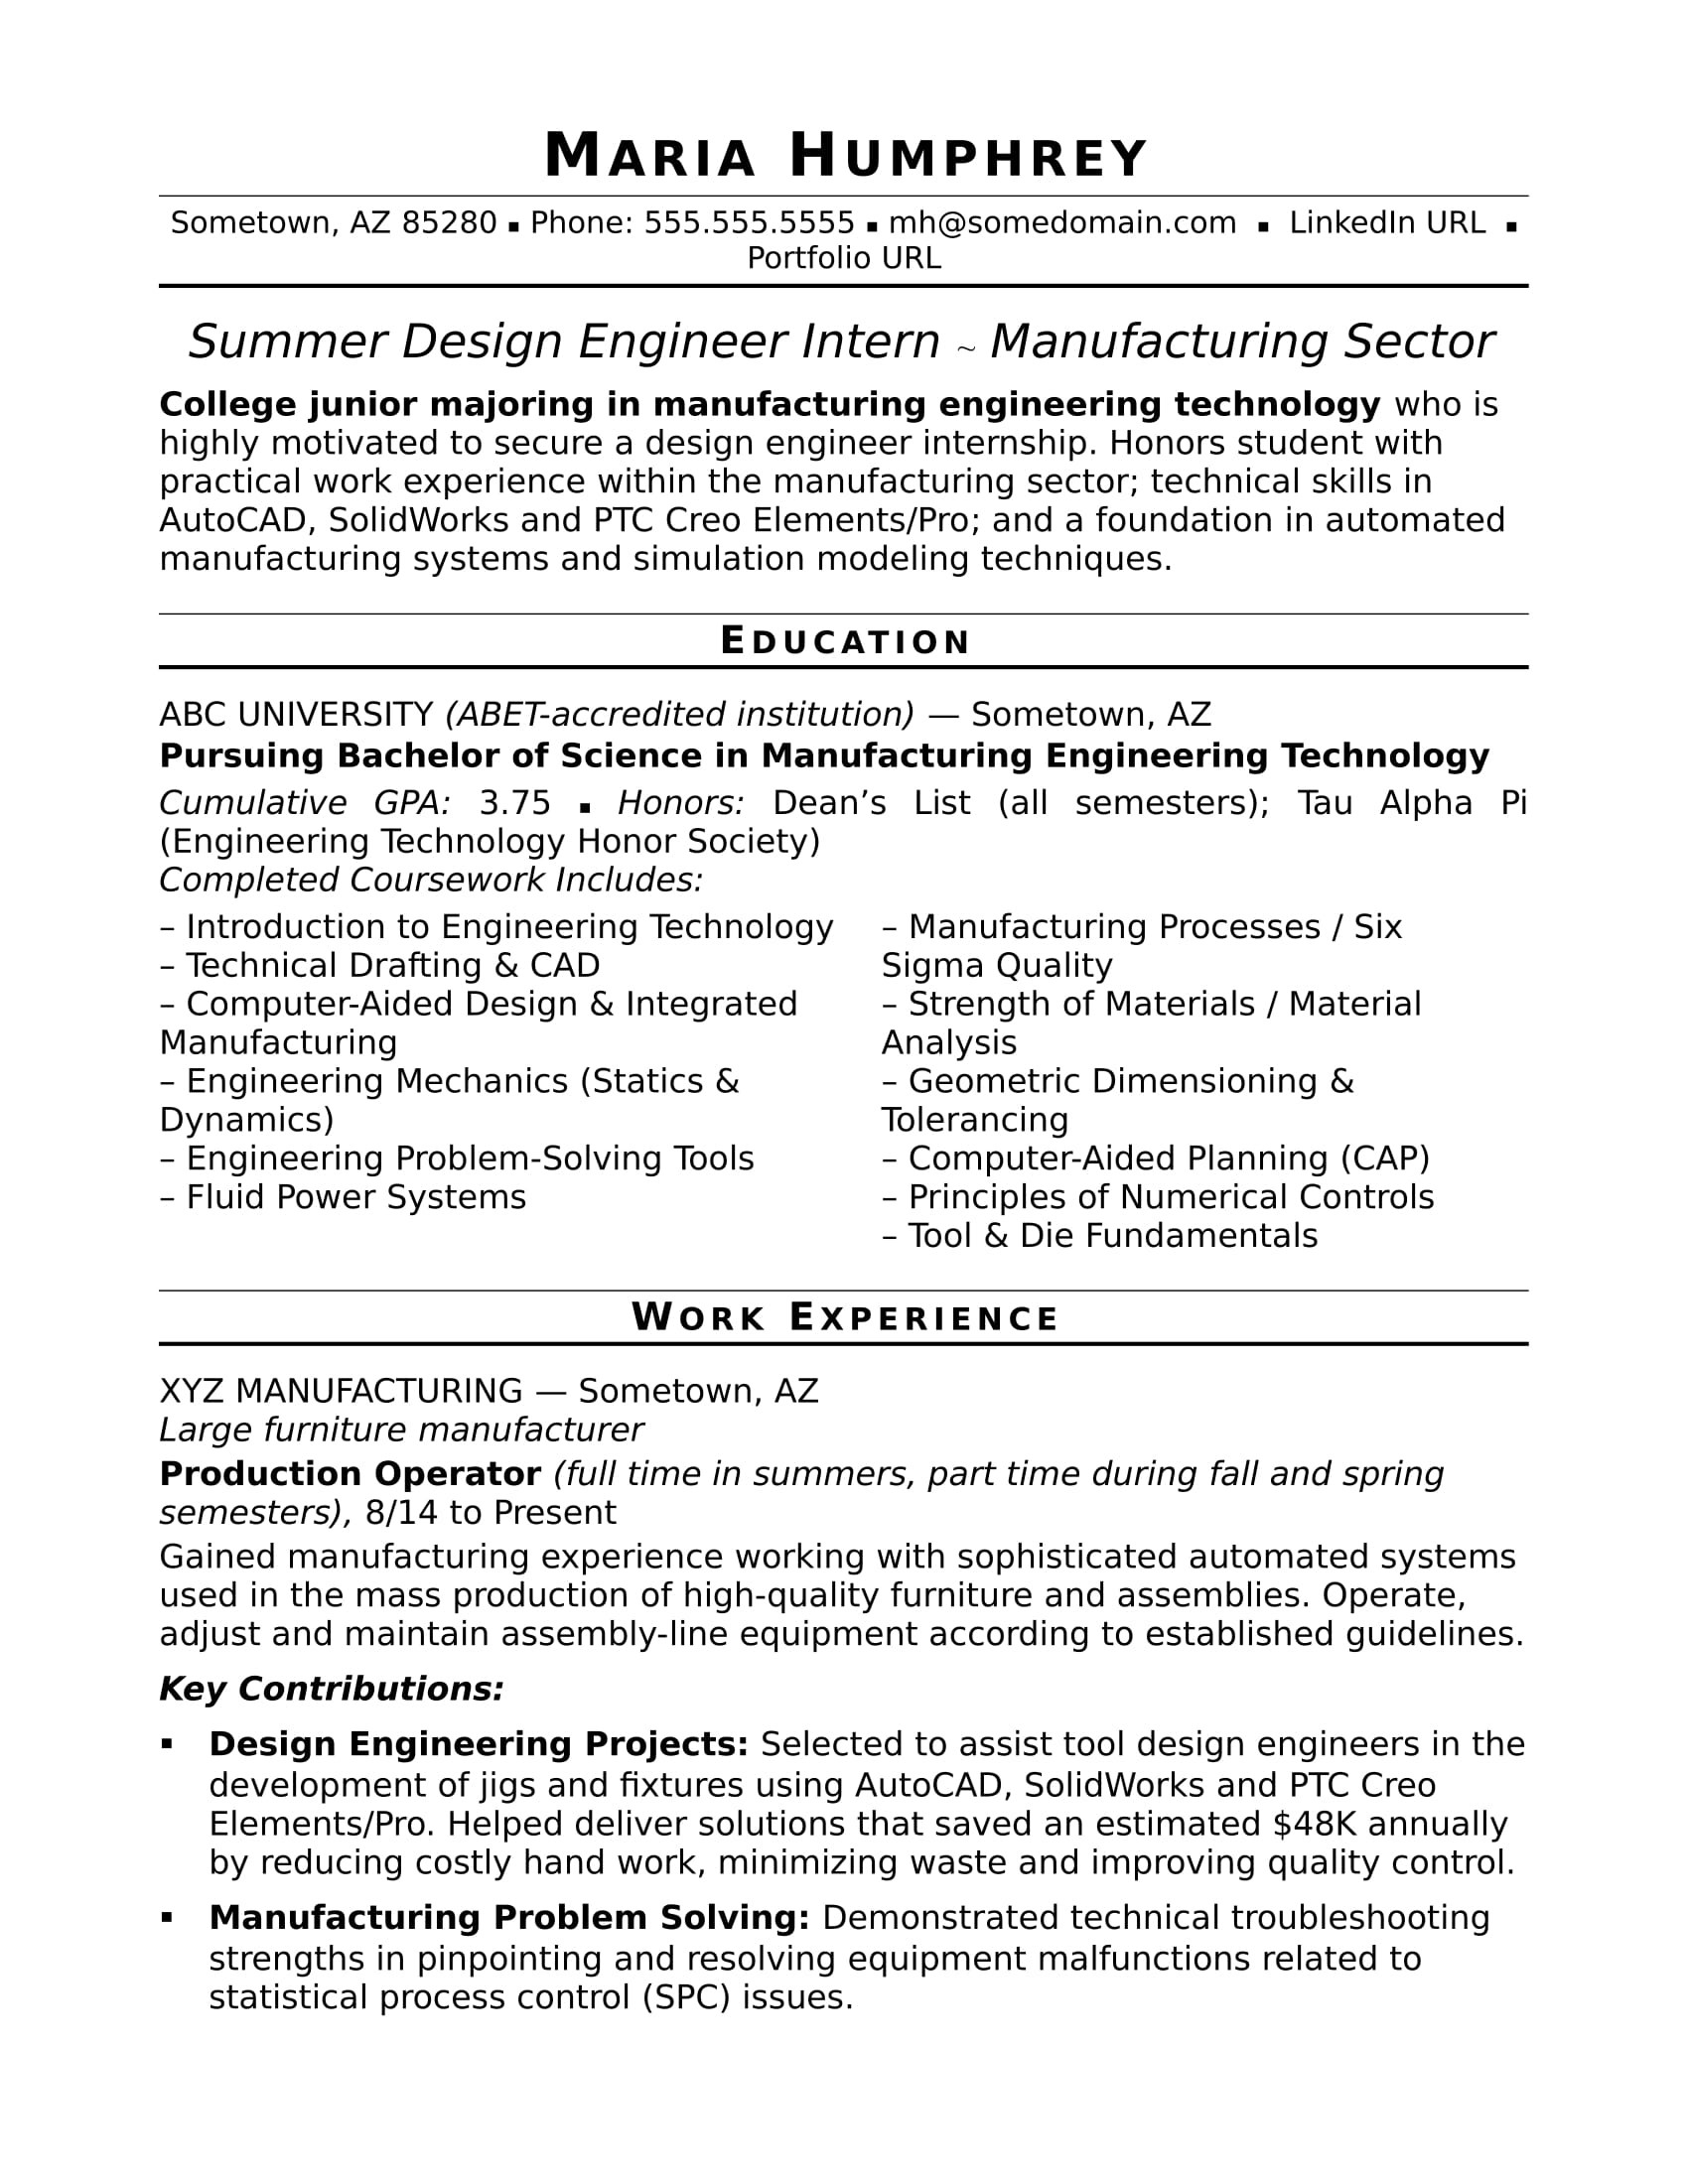 Sample Resume for Press tool Design Engineer Sample Resume for An Entry-level Design Engineer Monster.com